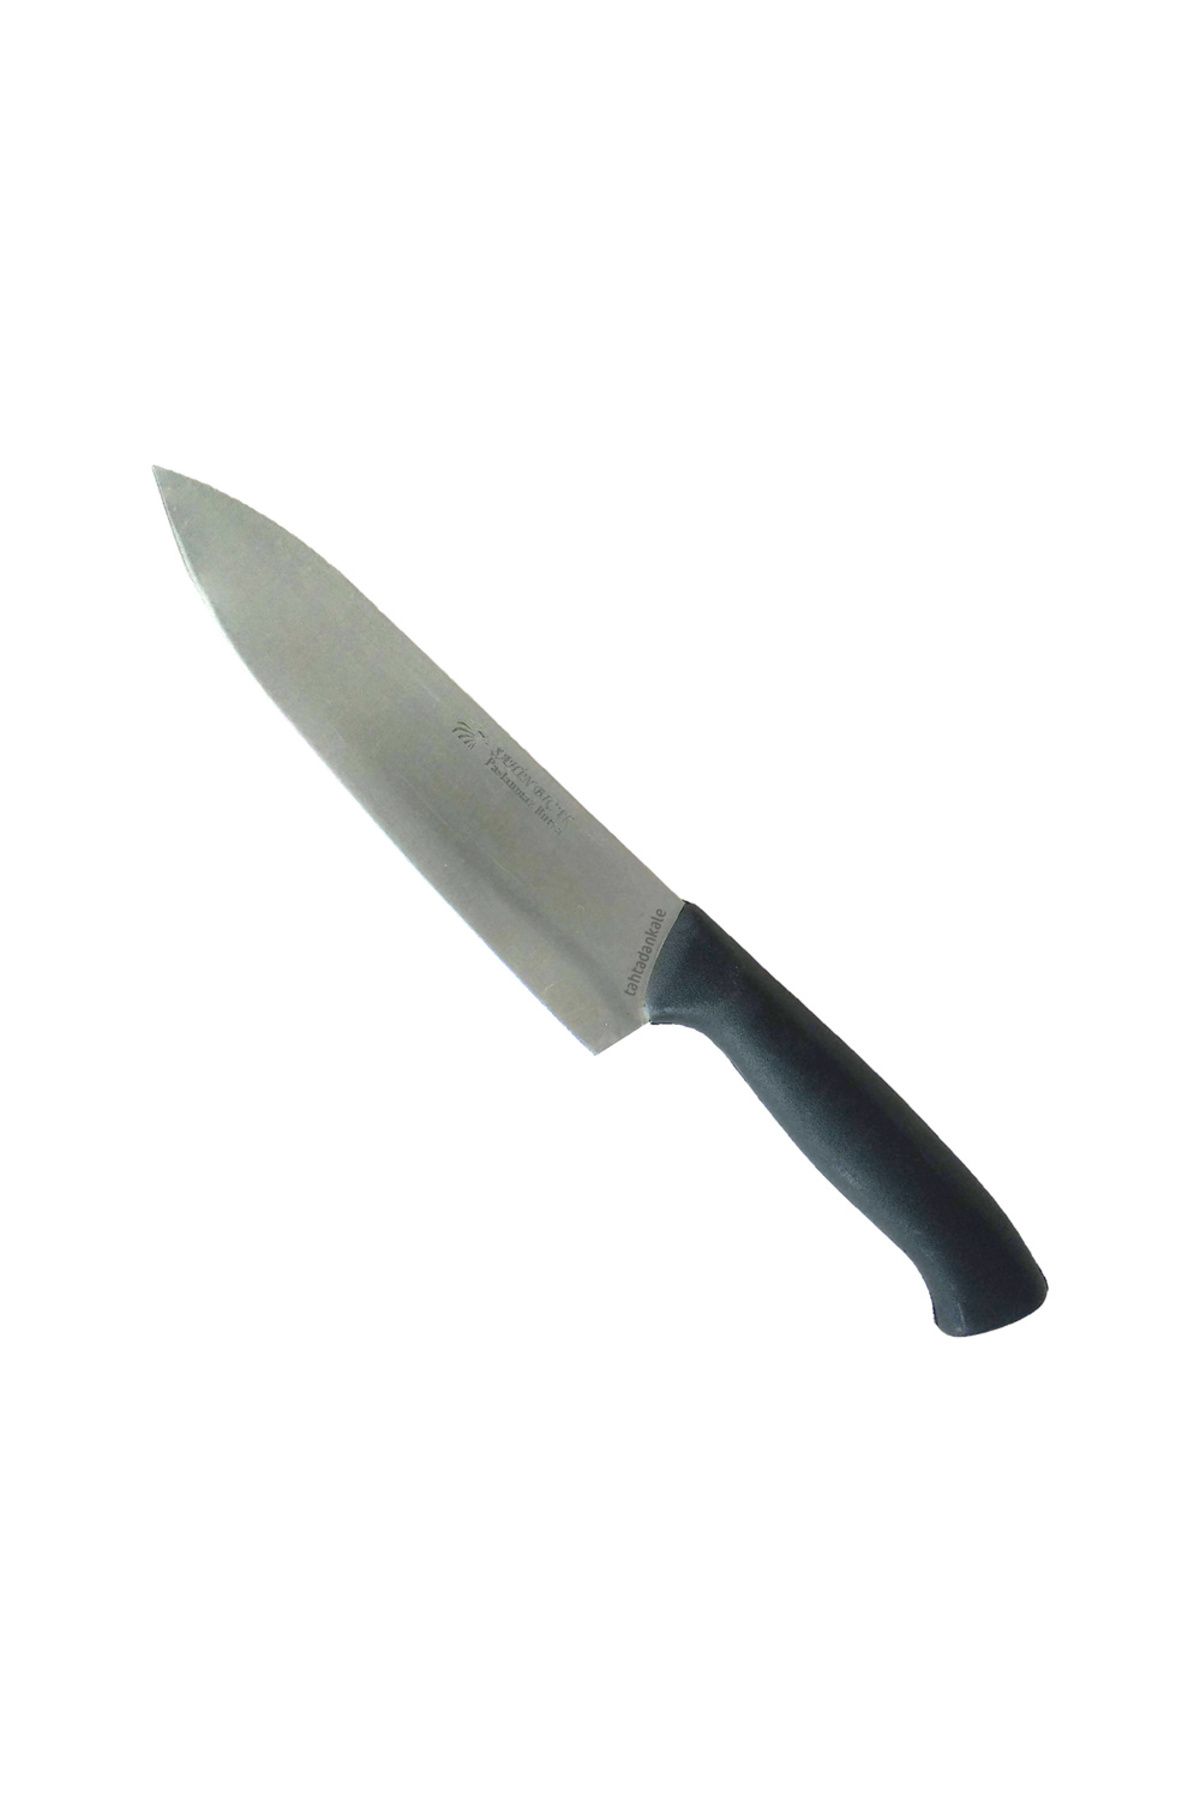 Şahin Bursa Paslanmaz Büyük Şef Bıçağı 23 Cm, Plastik Sap